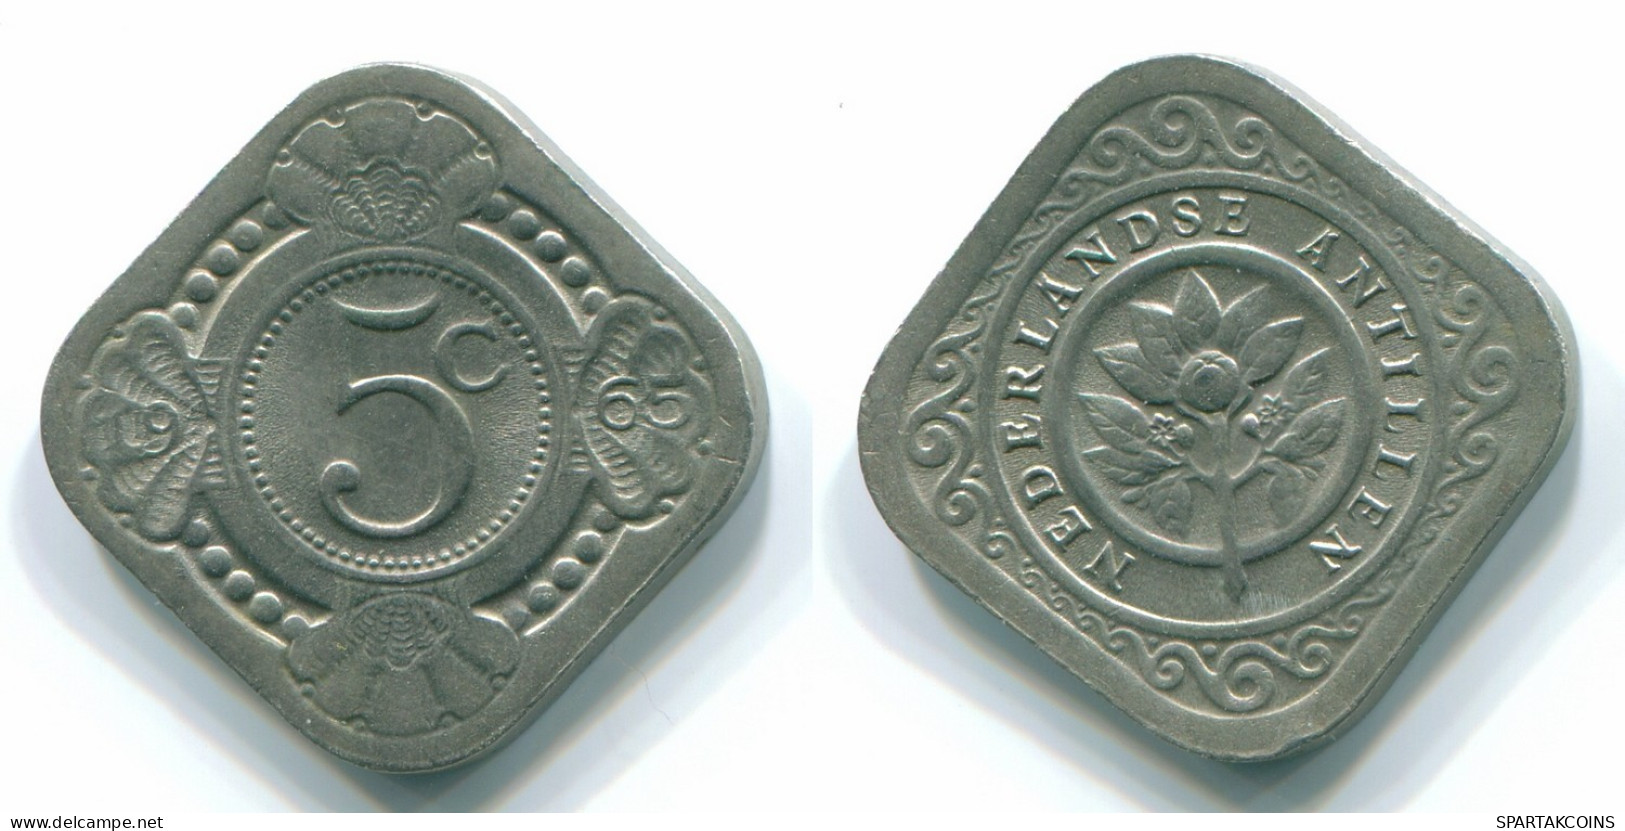 5 CENTS 1965 NIEDERLÄNDISCHE ANTILLEN Nickel Koloniale Münze #S12444.D.A - Niederländische Antillen